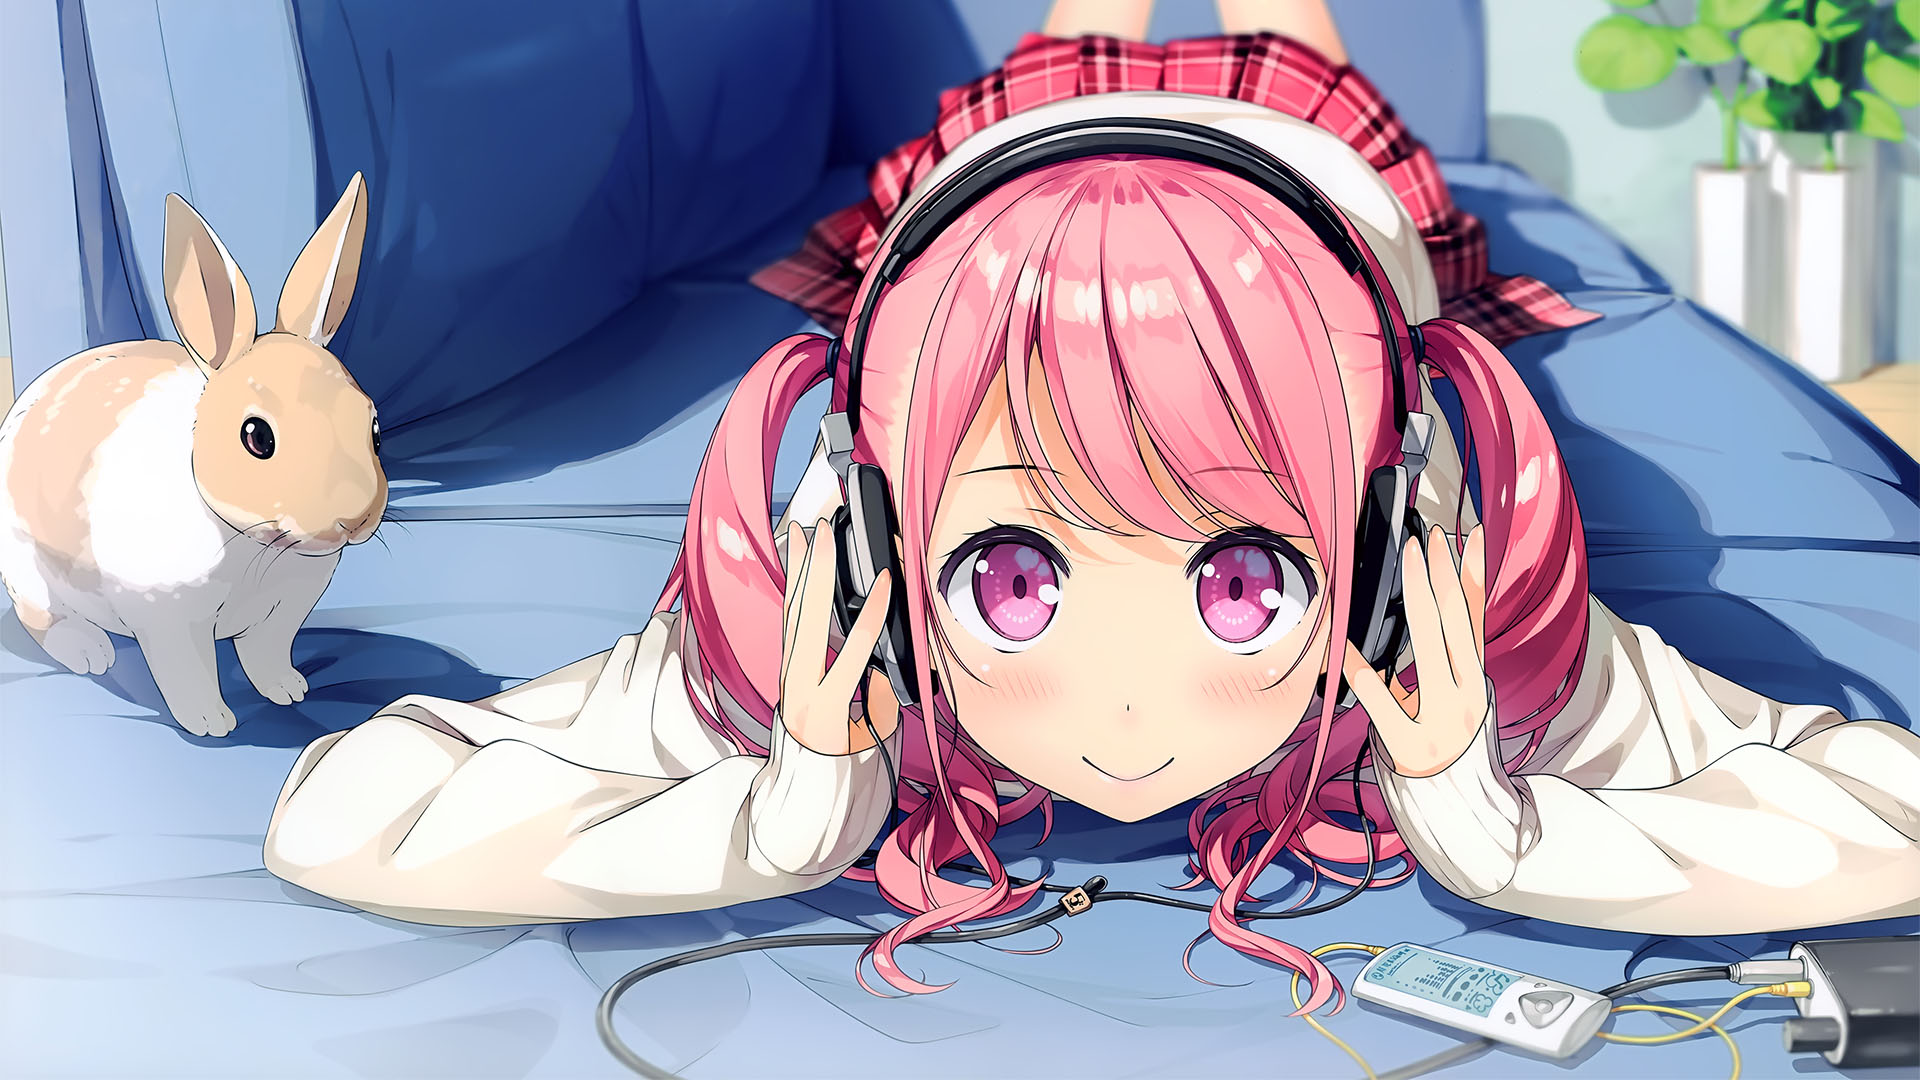 anime girl wallpaper,dibujos animados,anime,equipo de sonido,oído,boca